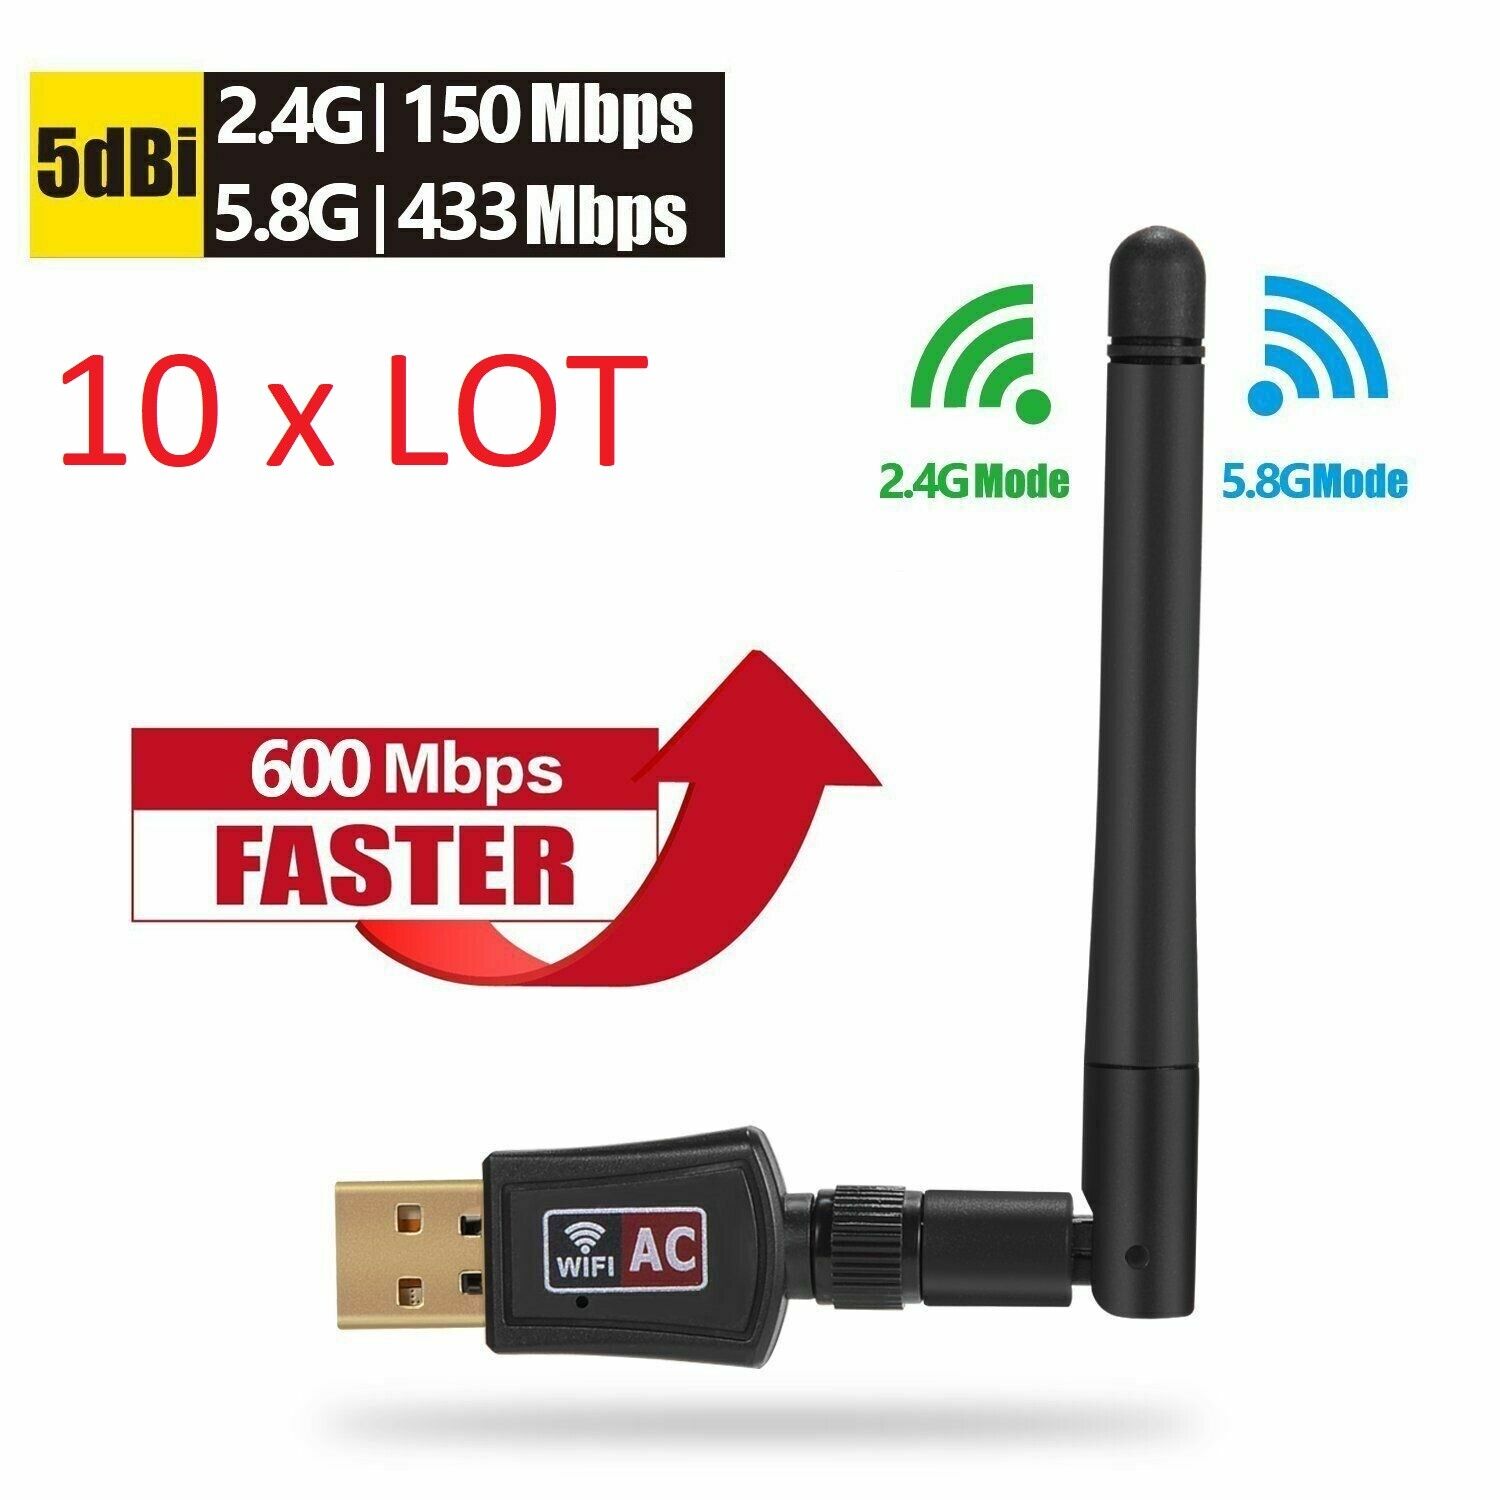 10 X LOTAC600 Mbps Dual Band 2.4/5Ghz Wireless USB WiFi Network w/Antenna 802.11